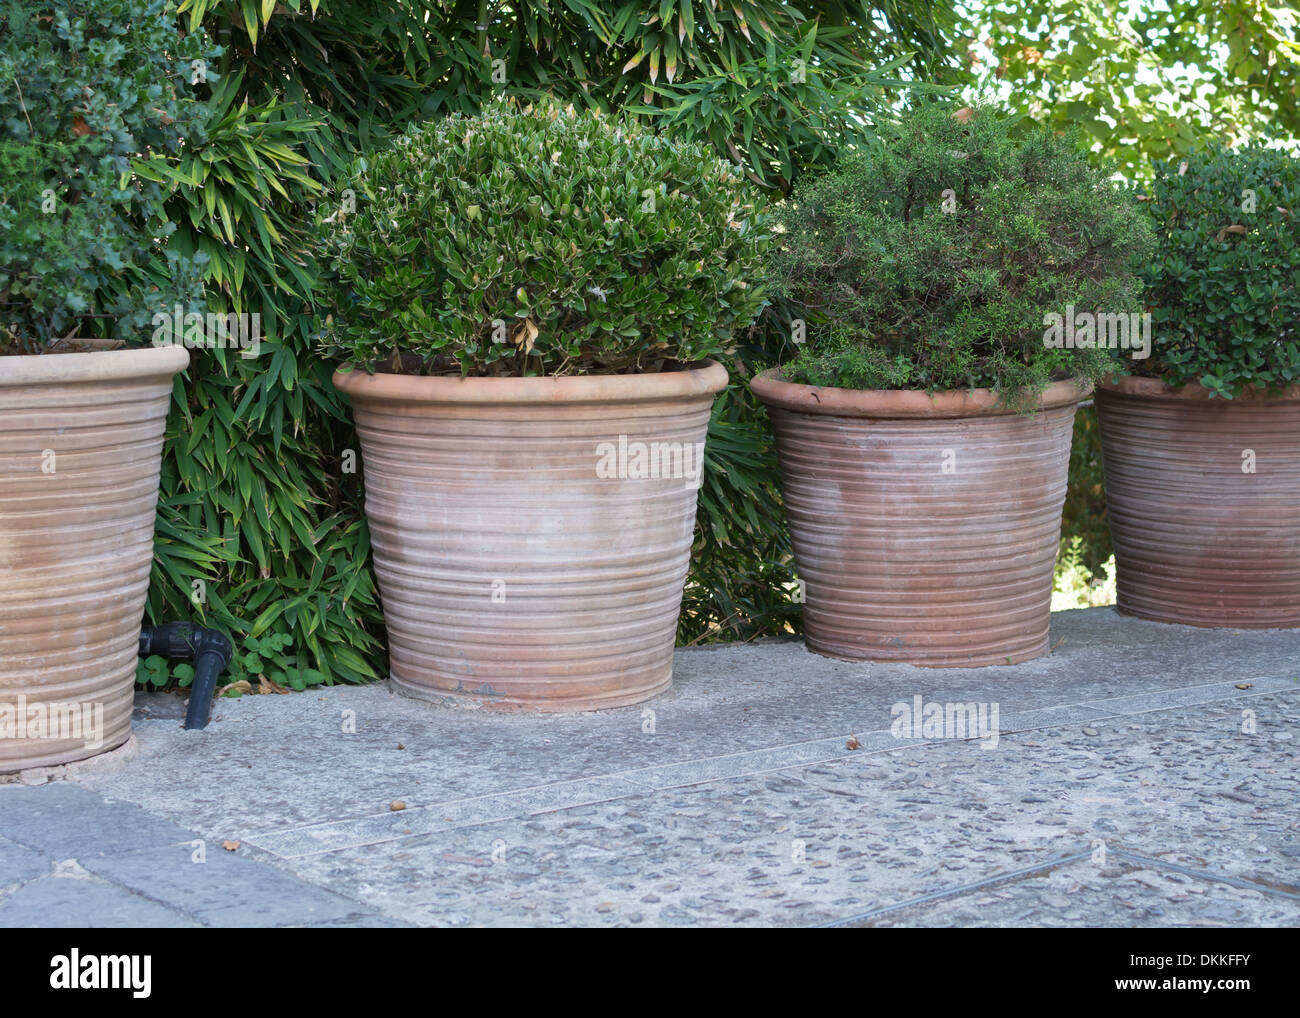 Cuatro grandes macetas de terracota con plantas verdes y redondos.  Mallorca, Islas Baleares, España Fotografía de stock - Alamy